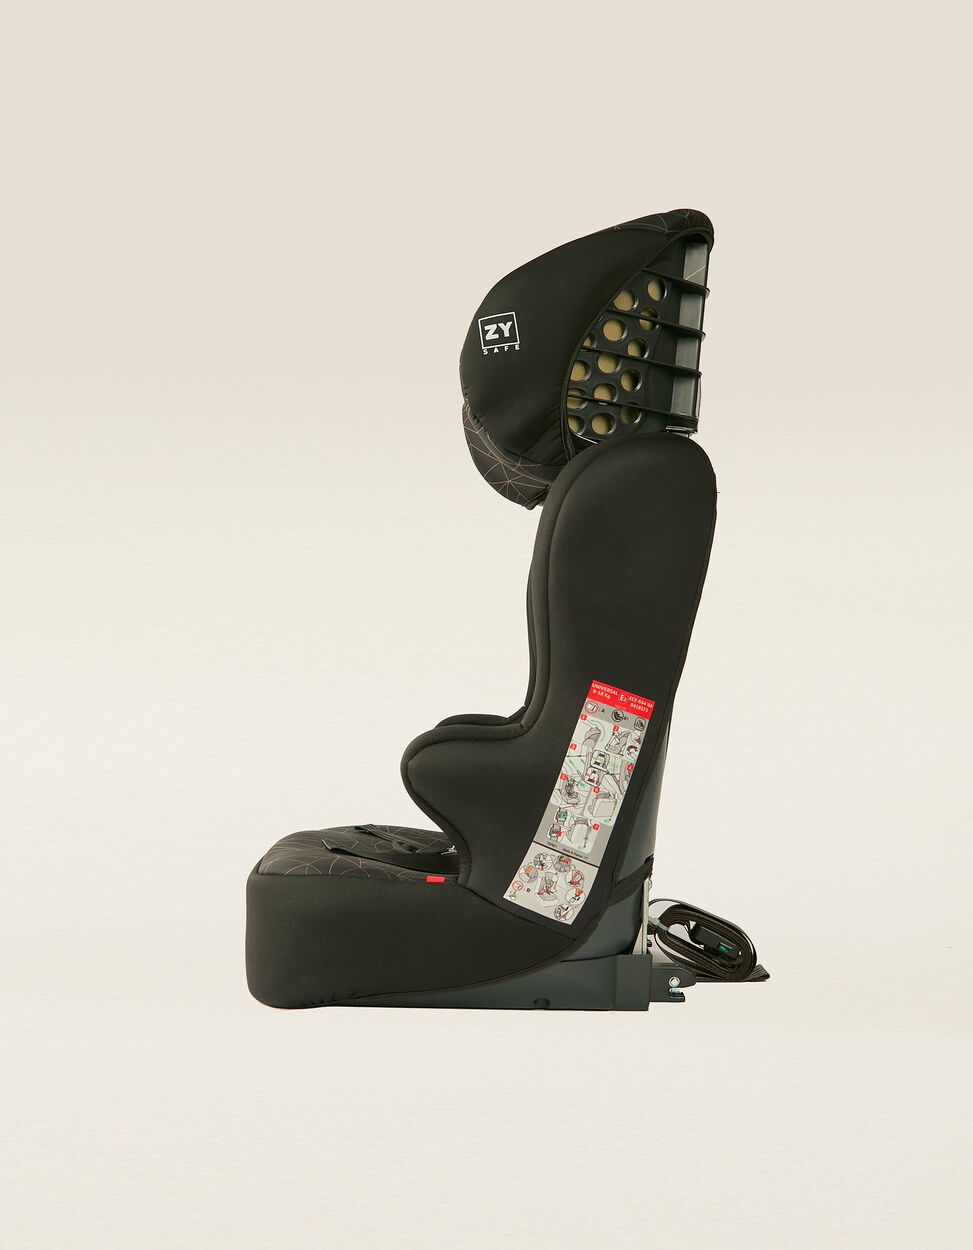 ZY SAFE Cadeiras Auto | Cadeira Auto Gr 0/1/2/3 Premium Isofix One Zy Safe  Melange Grey